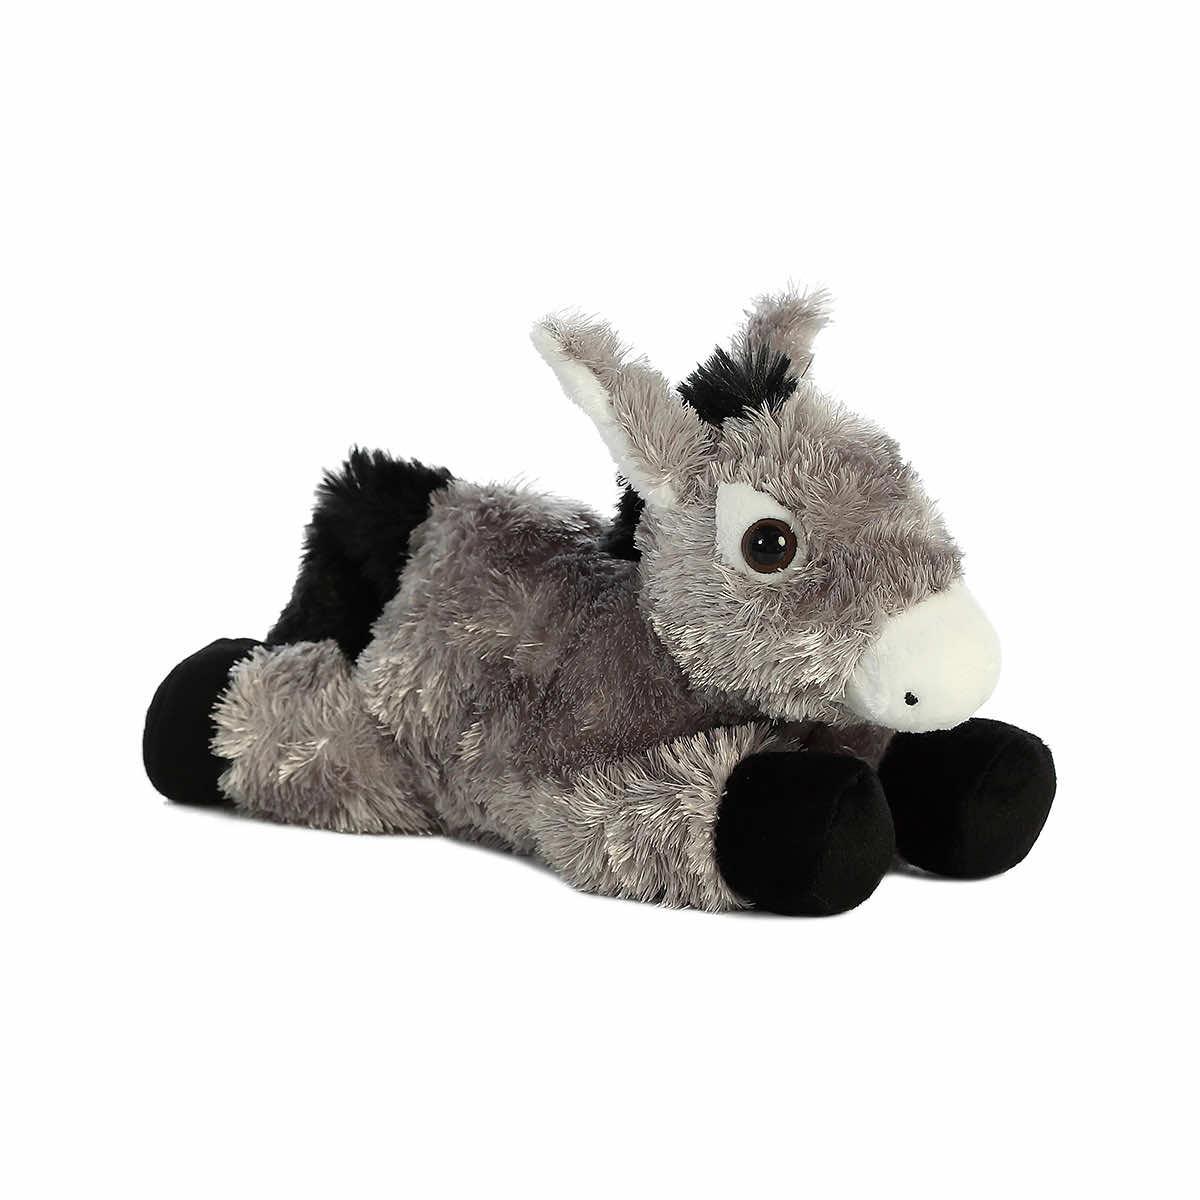  Mini Flopsie Donkey Plush Toy